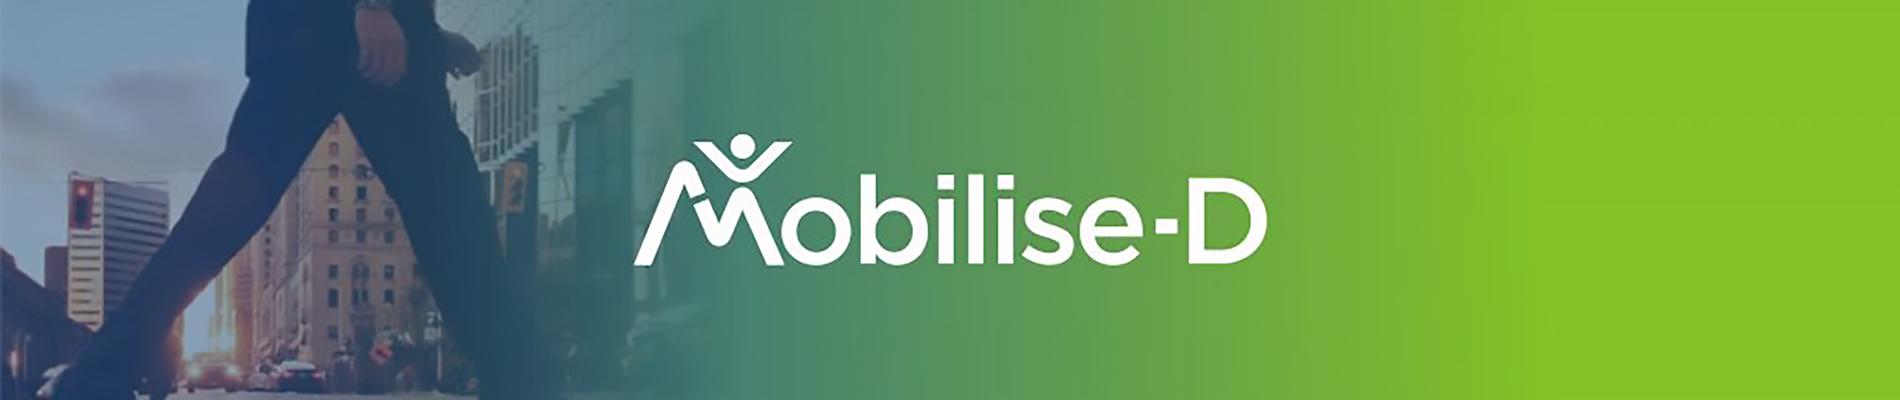 Mobilise-D-Slider_1900x700